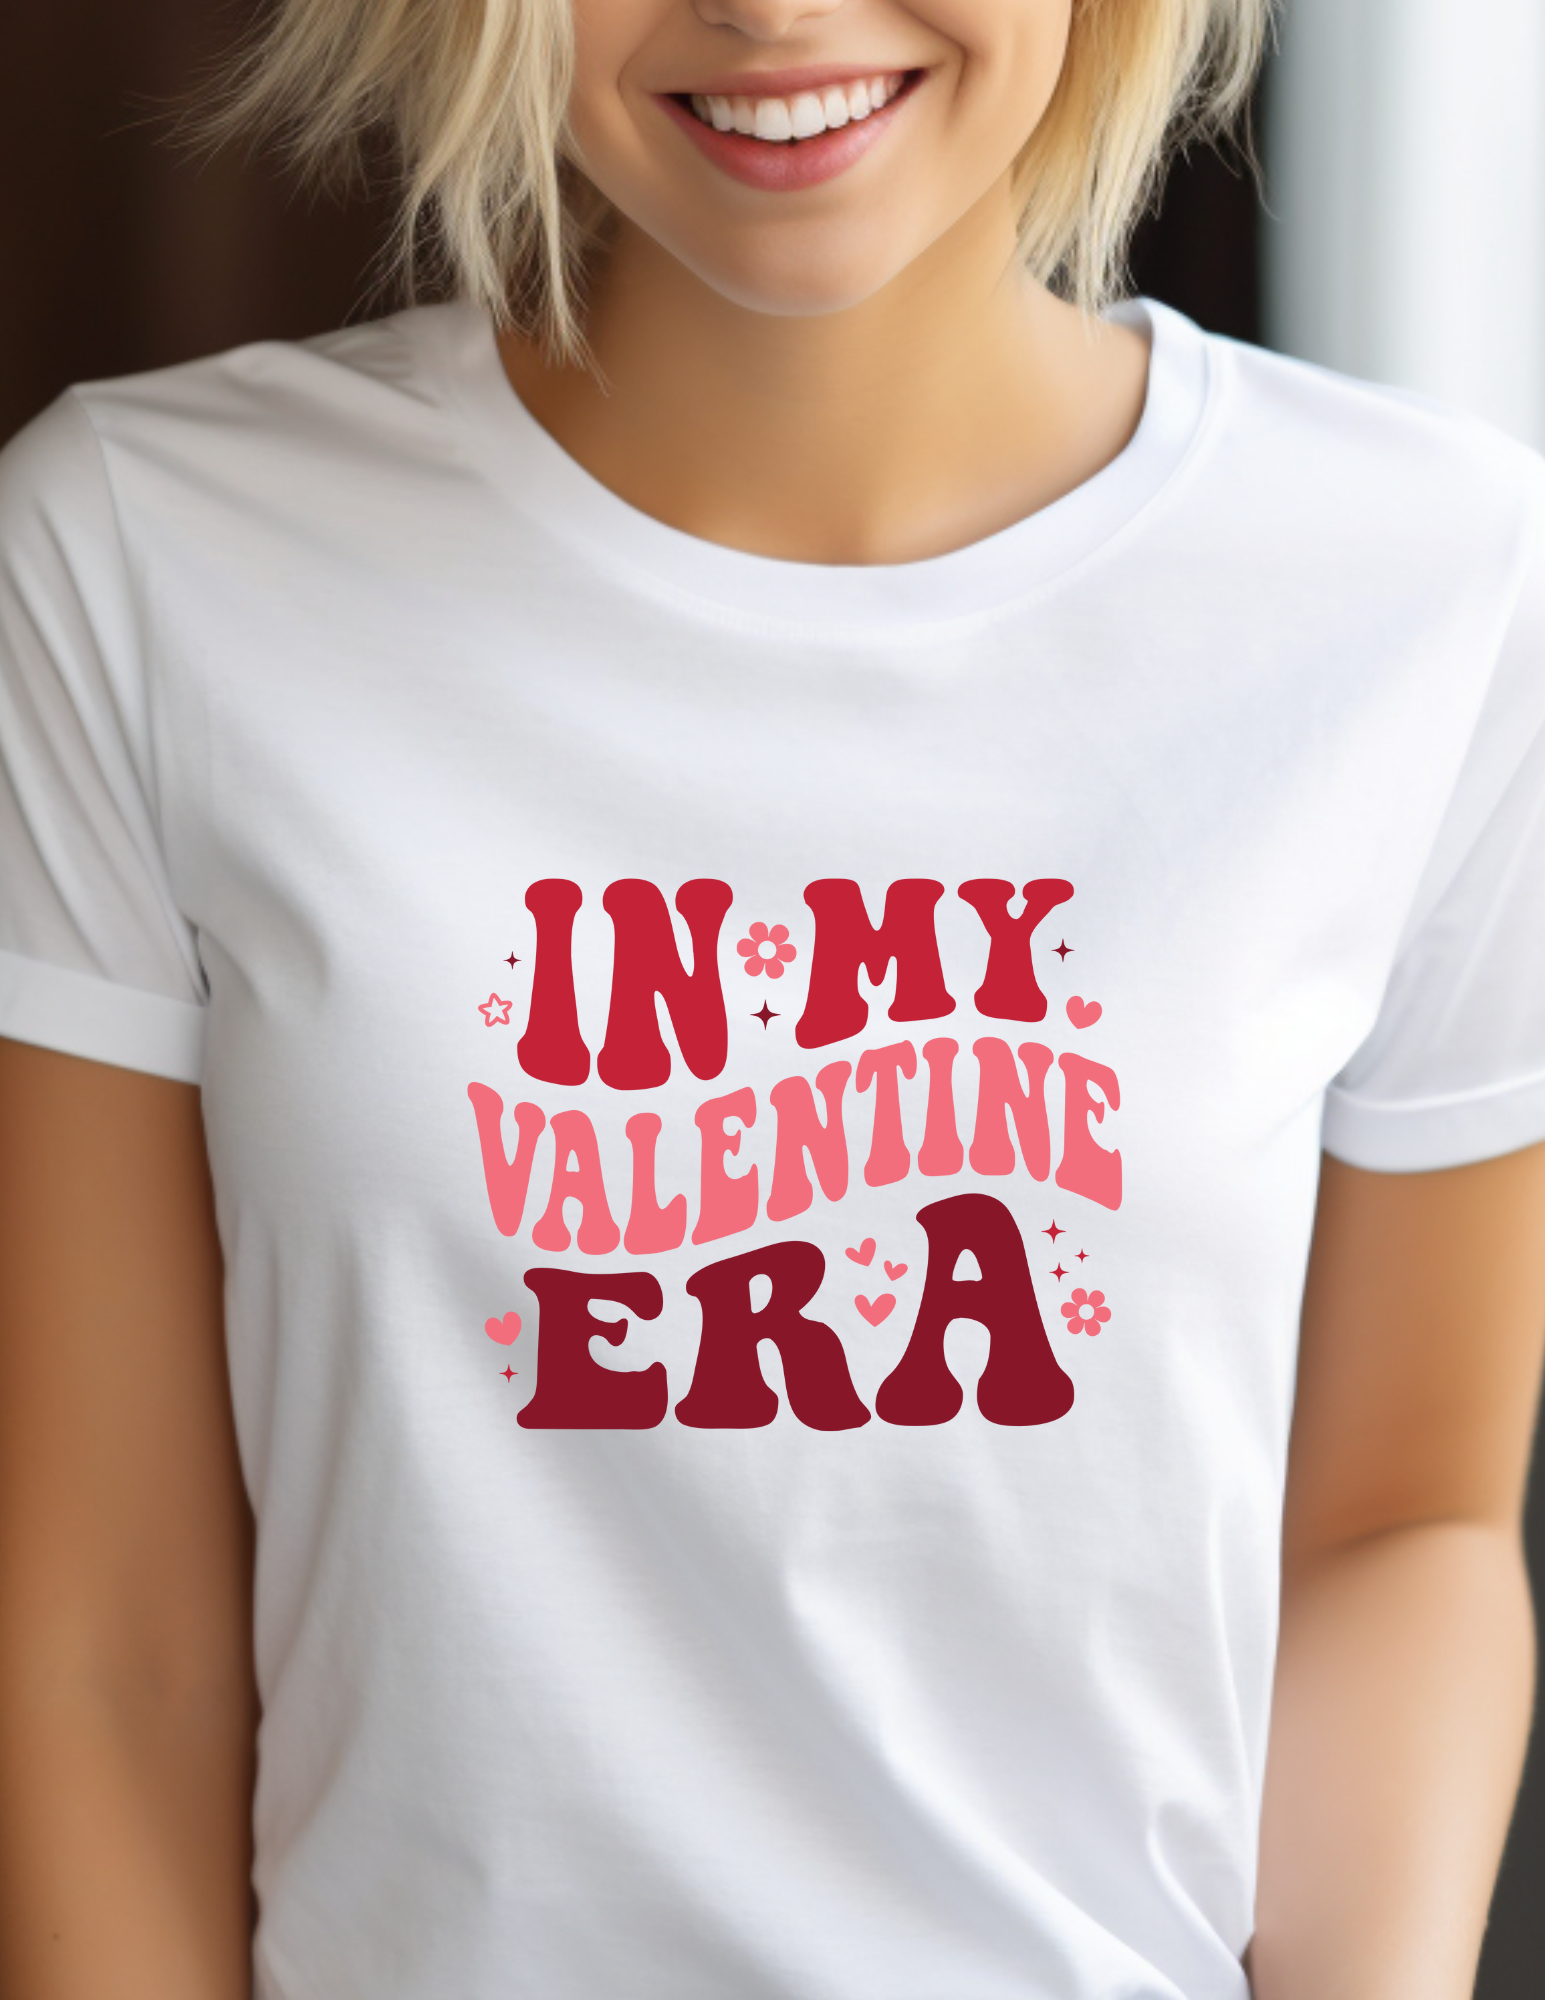 In My Valentine Era T-Shirt